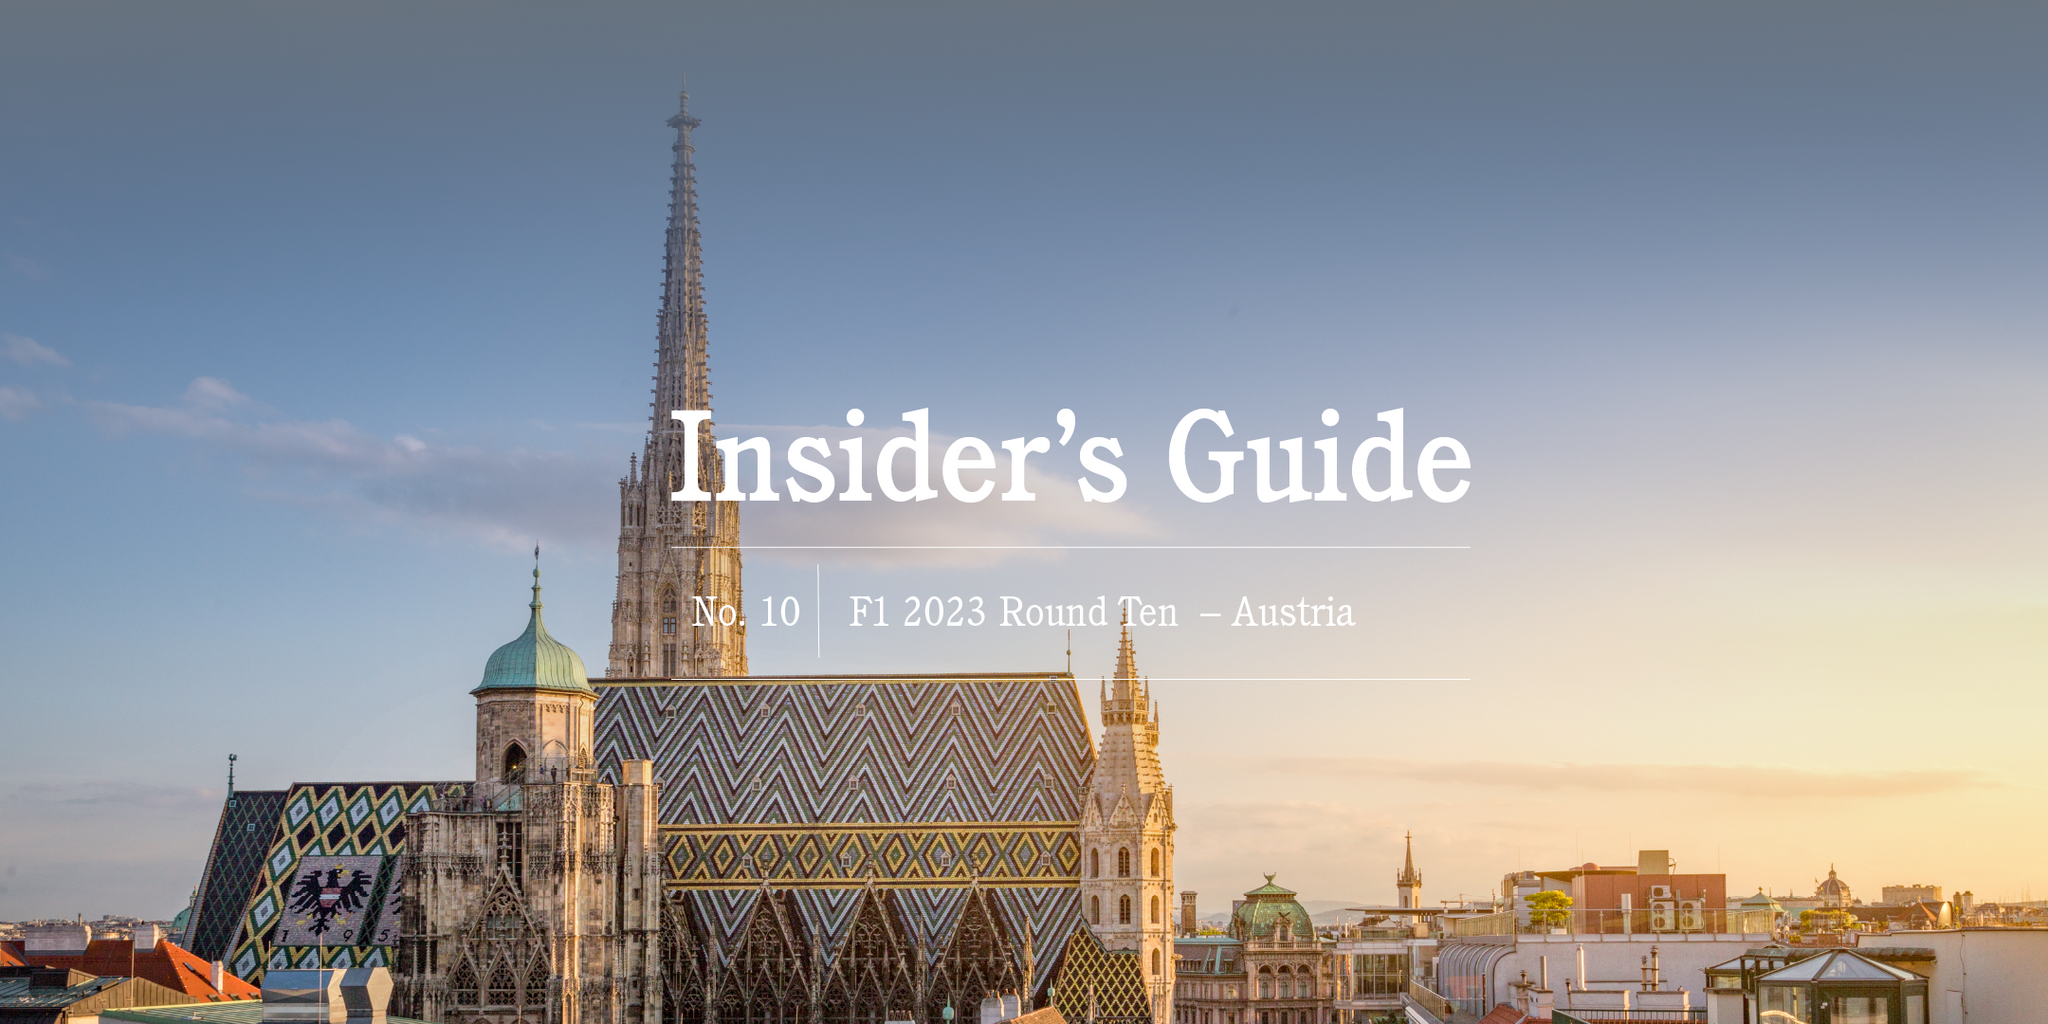 F1 2023 Insider's Guide No. 10 – Austria